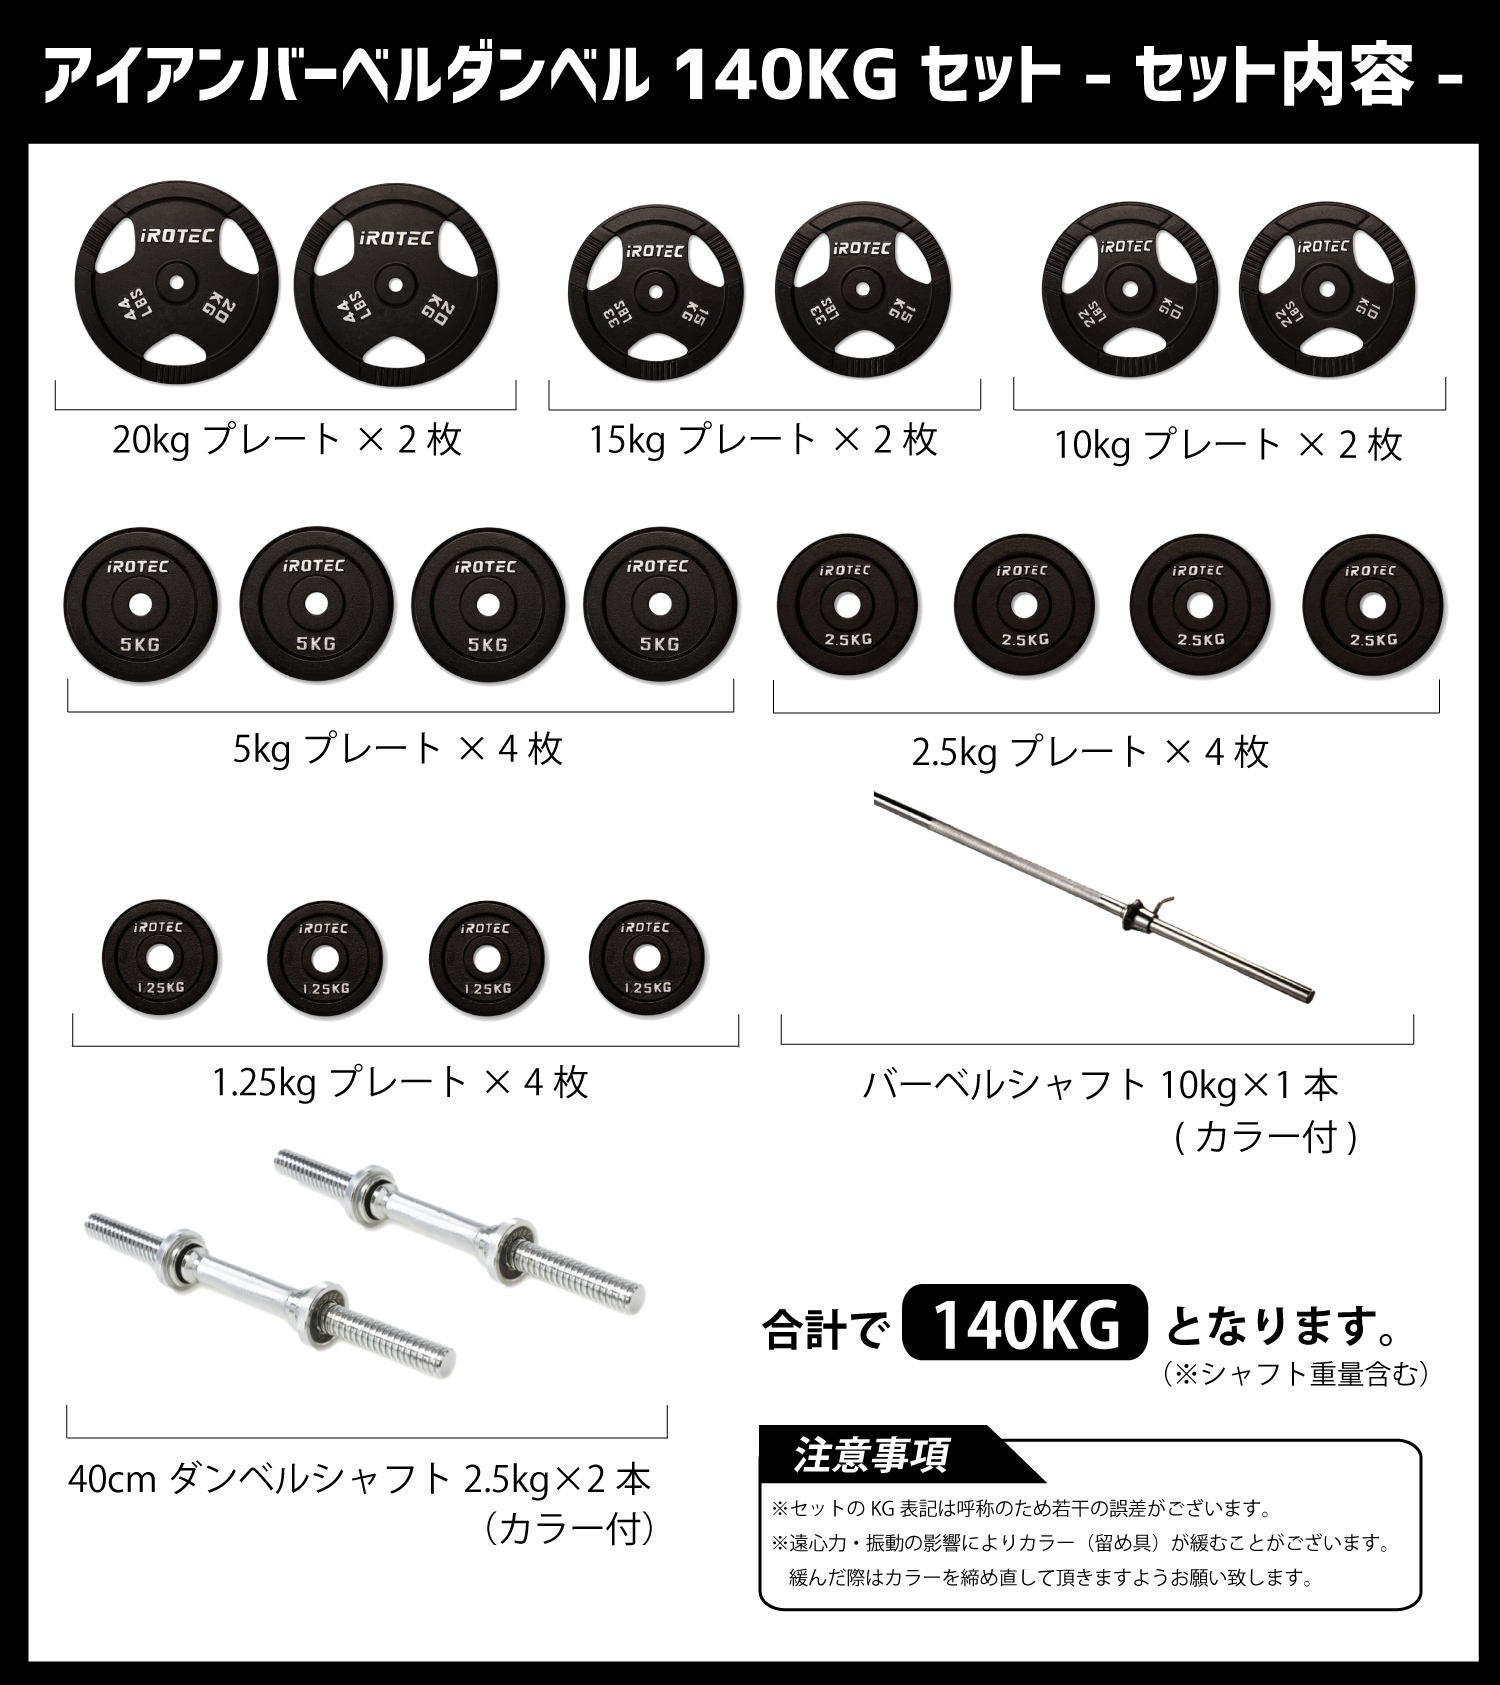 7130円 【86%OFF!】 IROTEC アイロテック アイアンバーベル70kg